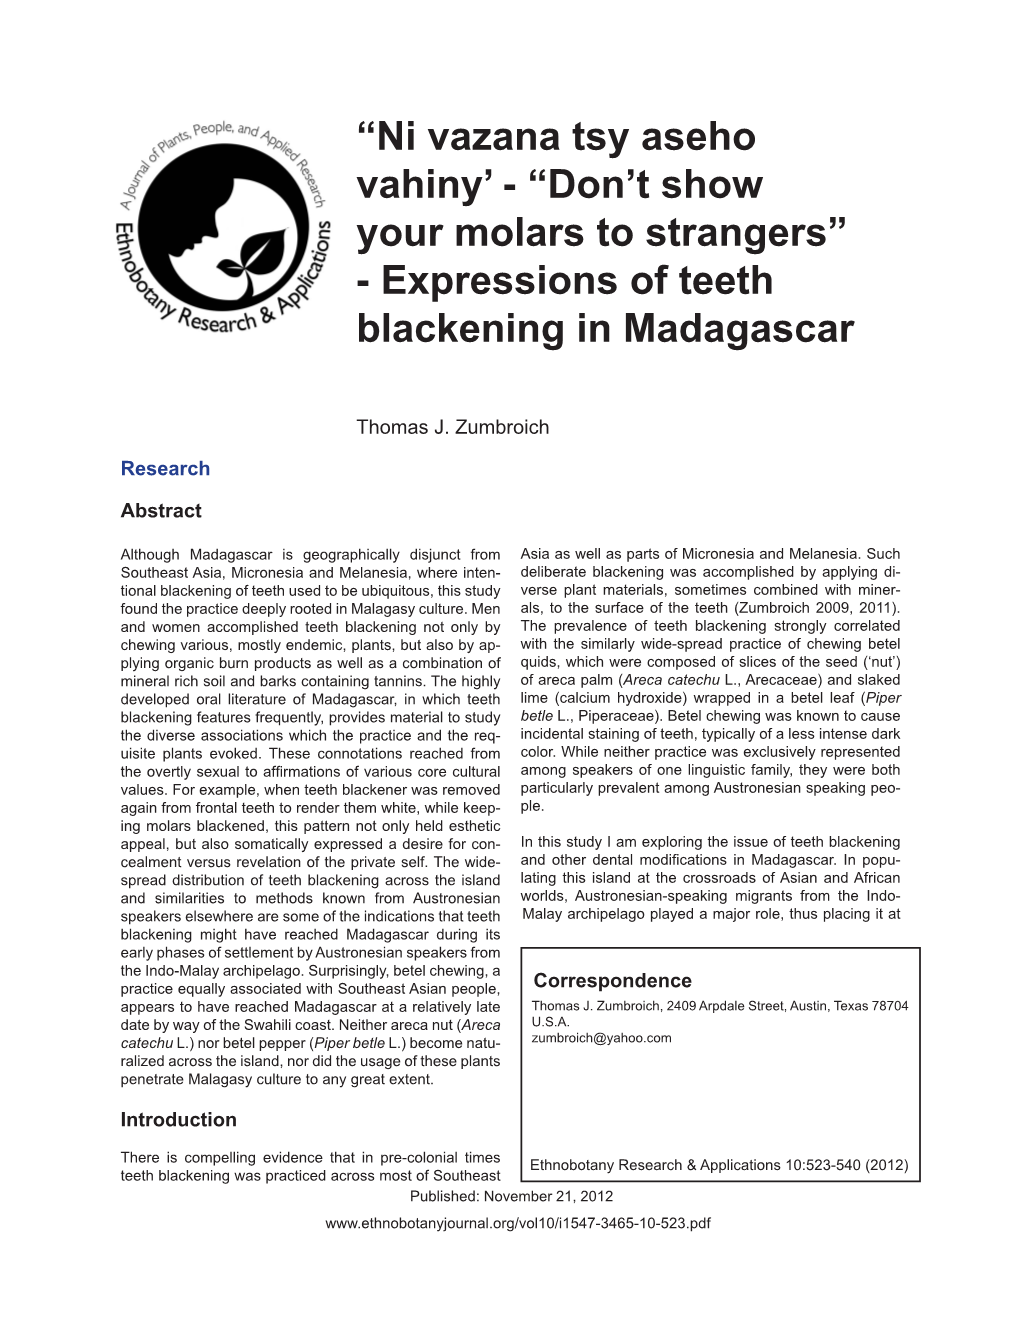 Ni Vazana Tsy Aseho Vahiny’ - “Don’T Show Your Molars to Strangers” - Expressions of Teeth Blackening in Madagascar